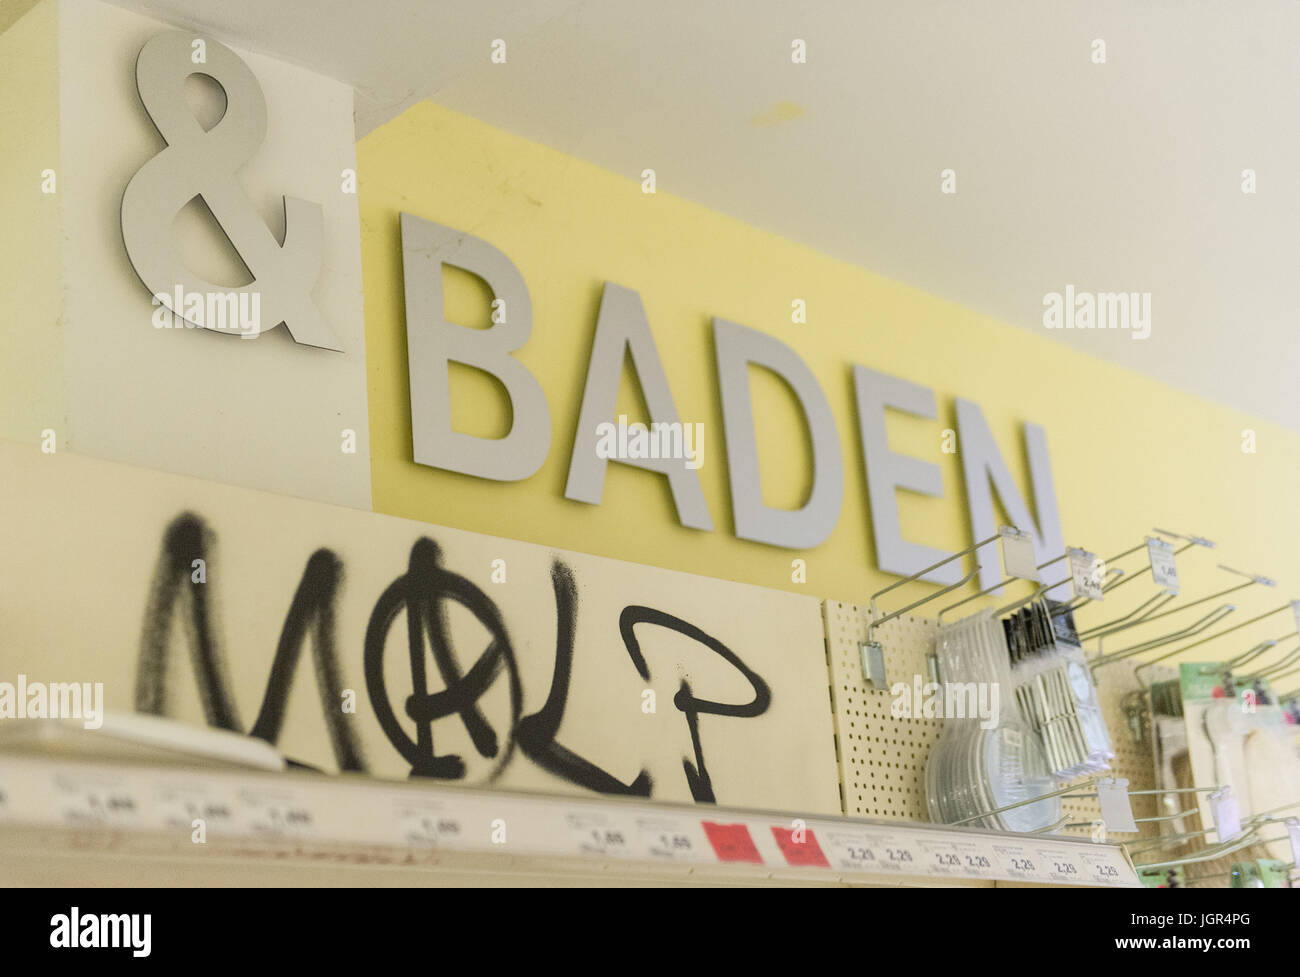 Hambourg, Allemagne. 10 juillet, 2017. Graffiti dans un Budnikowsky pharmacie dans le domaine de Schanzenviertel Hambourg, Allemagne, 10 juillet 2017. Le magasin a été endommagé et pillé à des émeutes pendant le sommet du G20. Photo : Christina Sabrowsky/dpa/Alamy Live News Banque D'Images